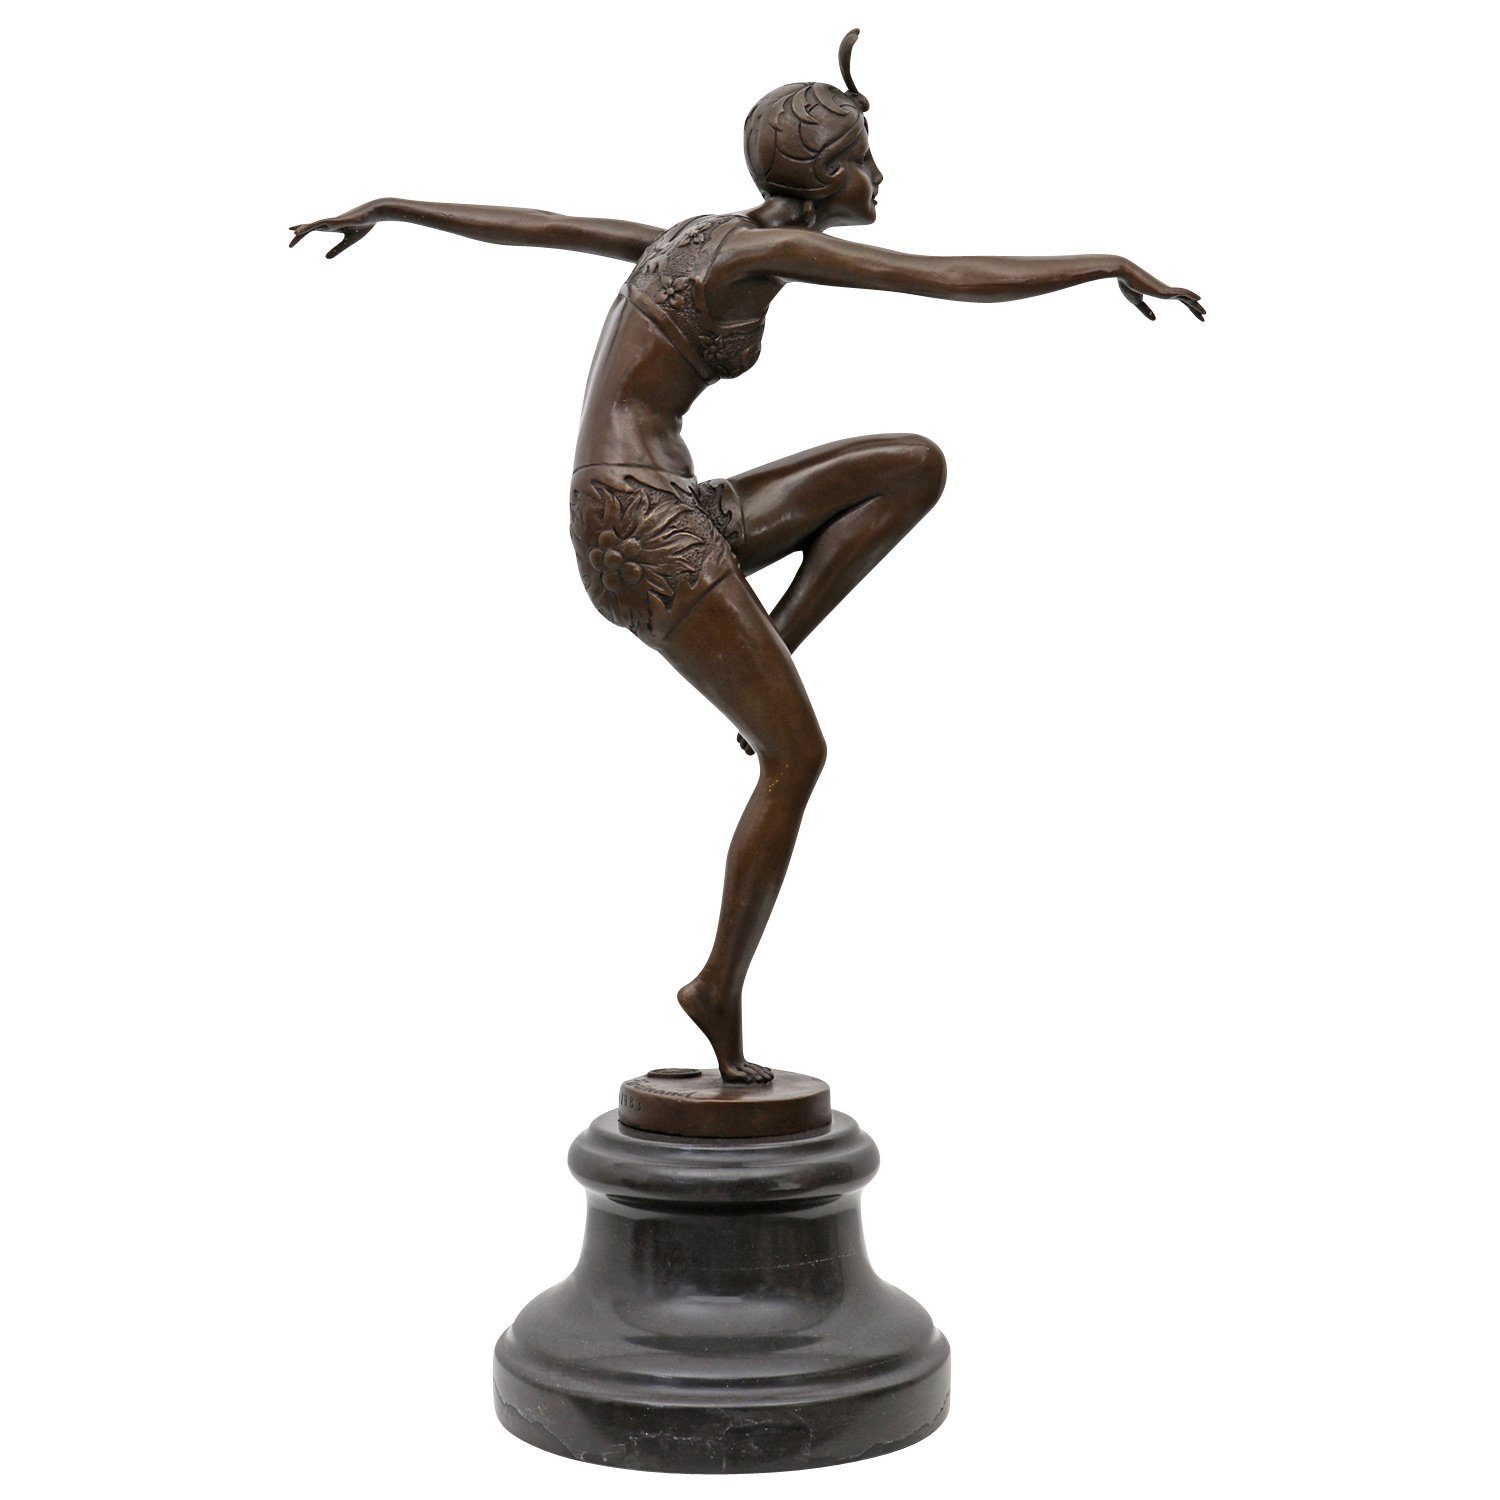 Bronzeskulptur Bronze Con Brio nach Preiss Bronzefigur Skulptur Antik-Stil 